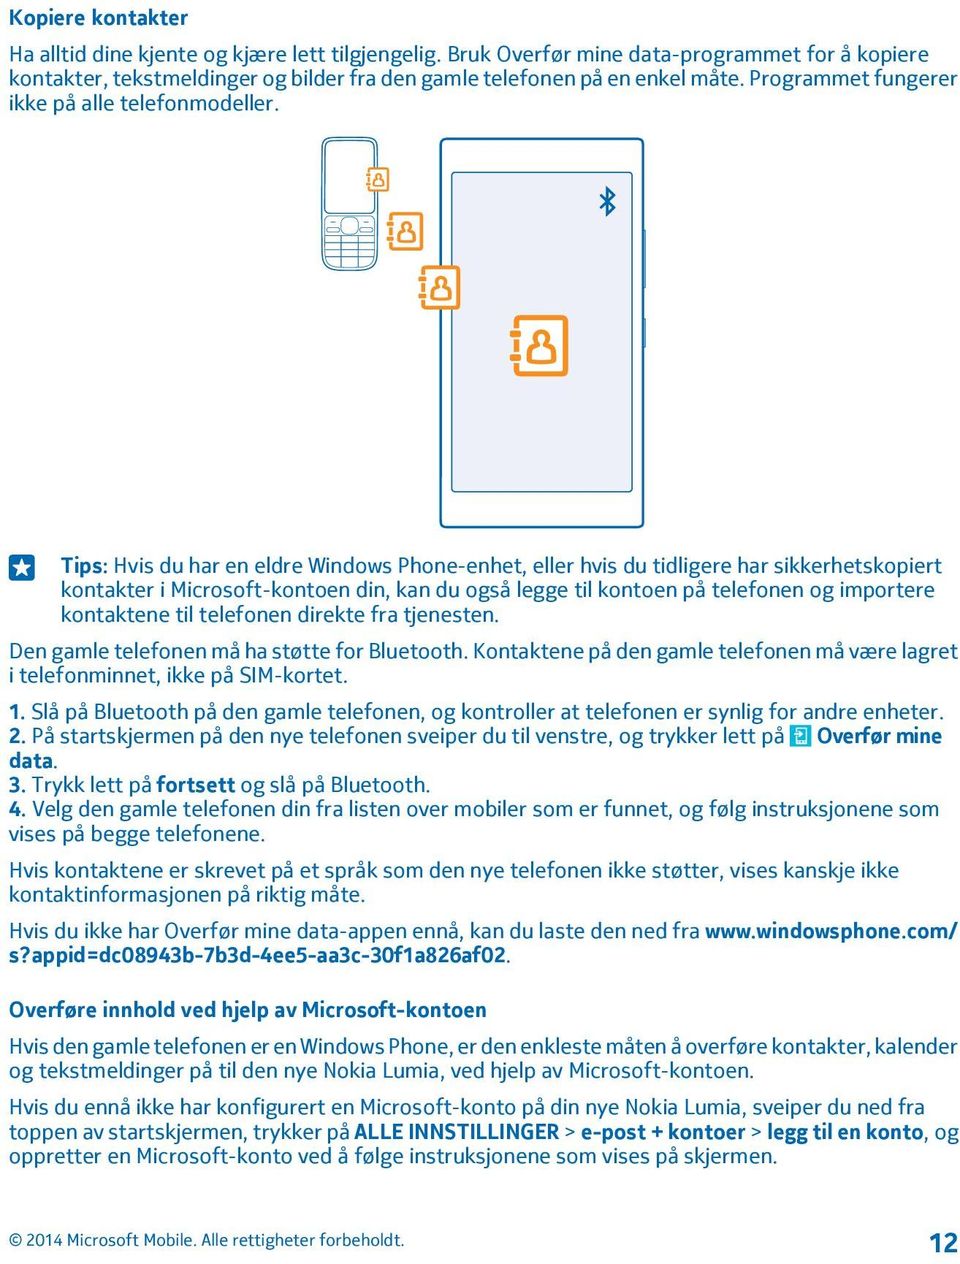 Tips: Hvis du har en eldre Windows Phone-enhet, eller hvis du tidligere har sikkerhetskopiert kontakter i Microsoft-kontoen din, kan du også legge til kontoen på telefonen og importere kontaktene til